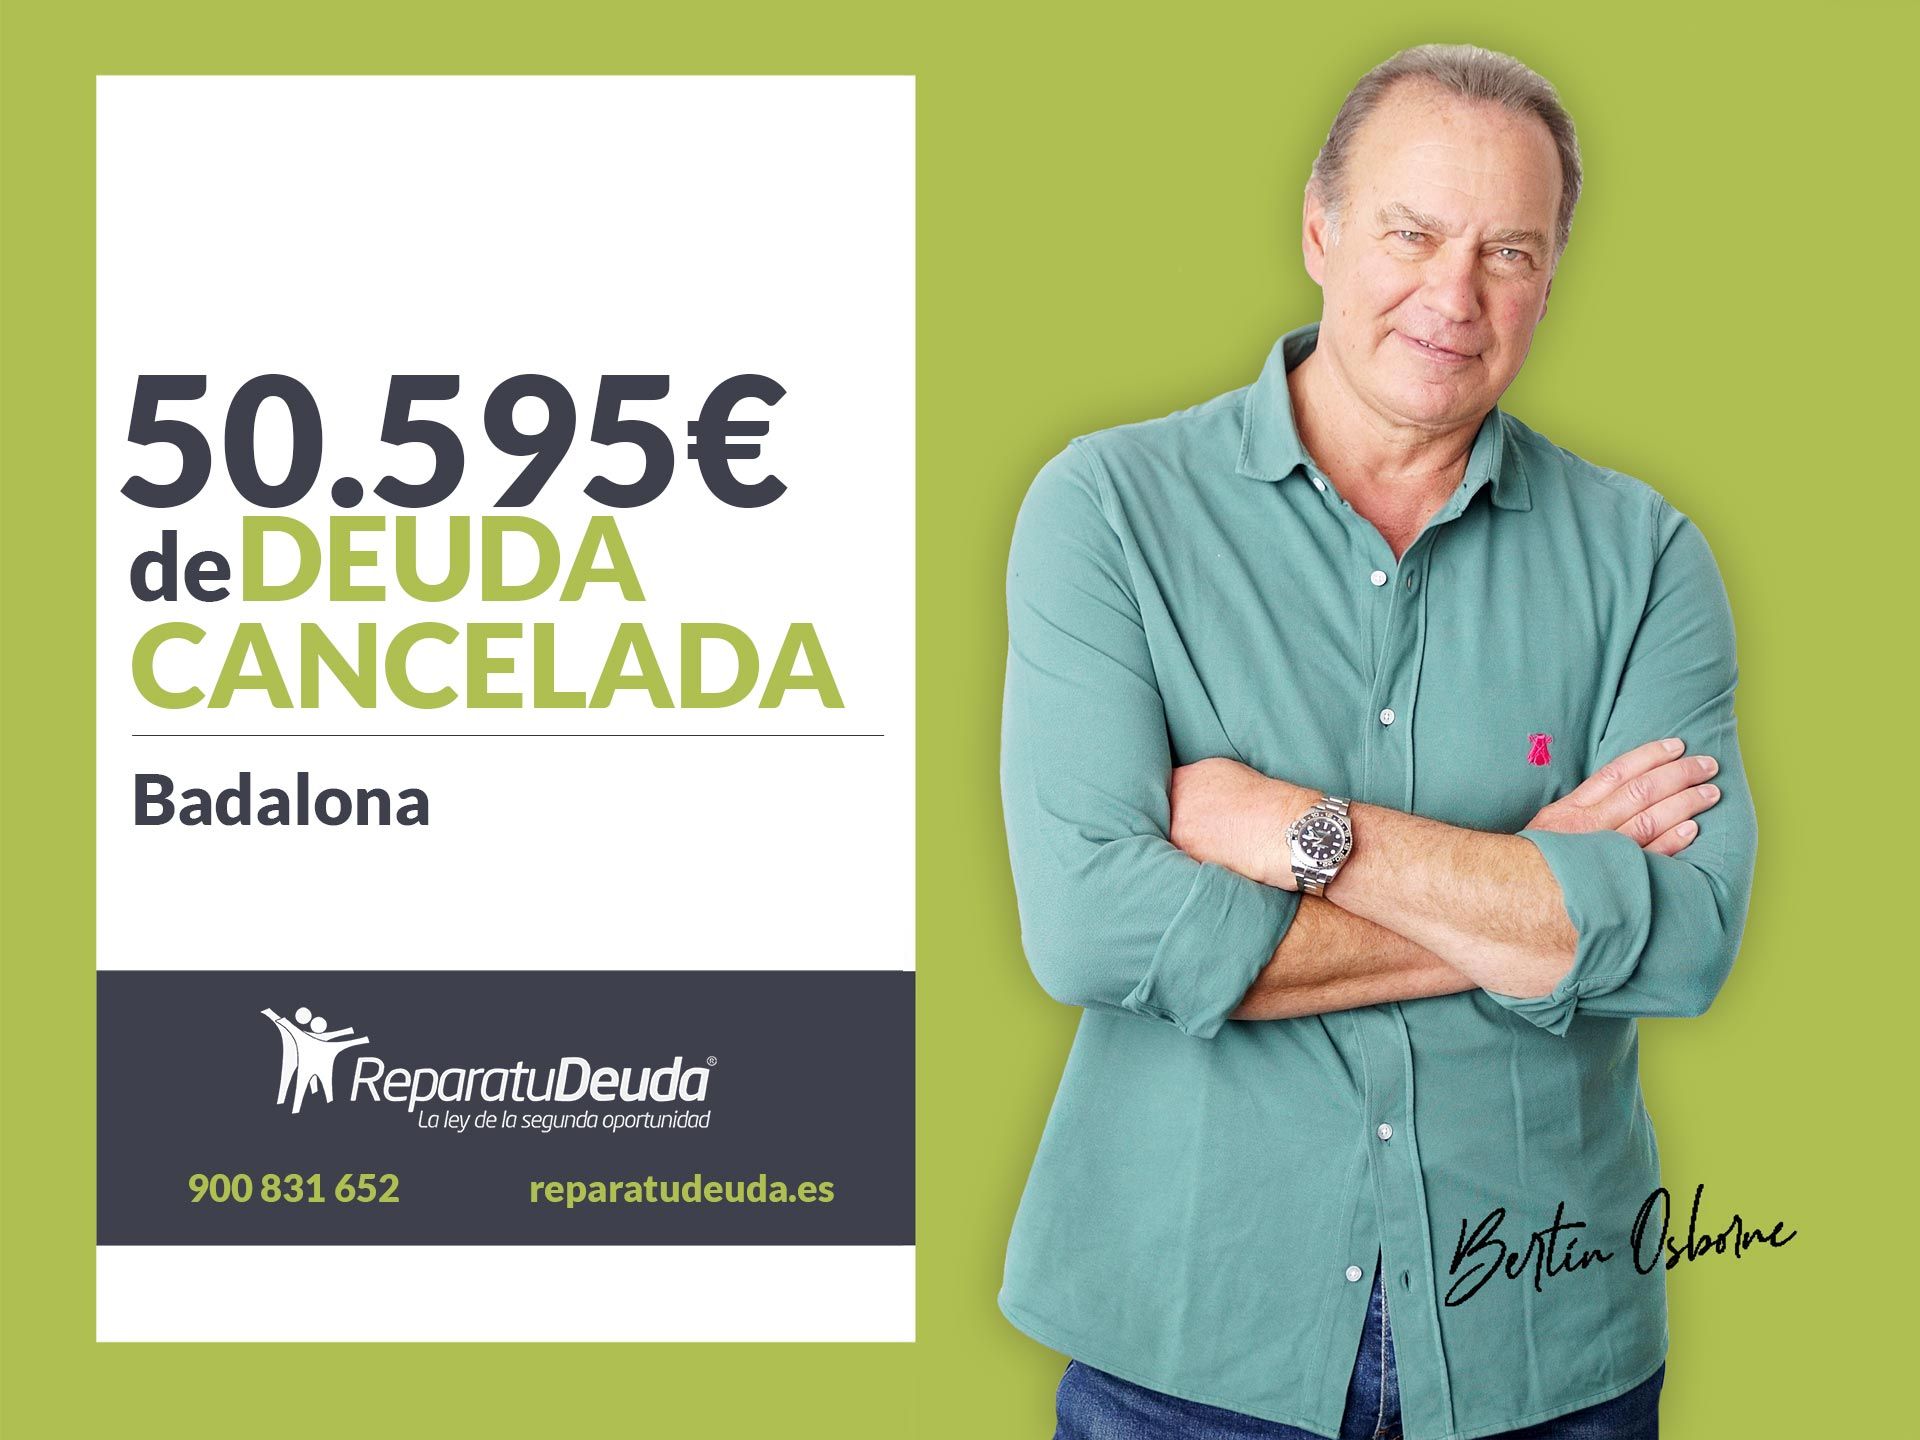 Repara tu Deuda Abogados cancela 50.595? en Badalona (Barcelona) con la Ley de Segunda Oportunidad